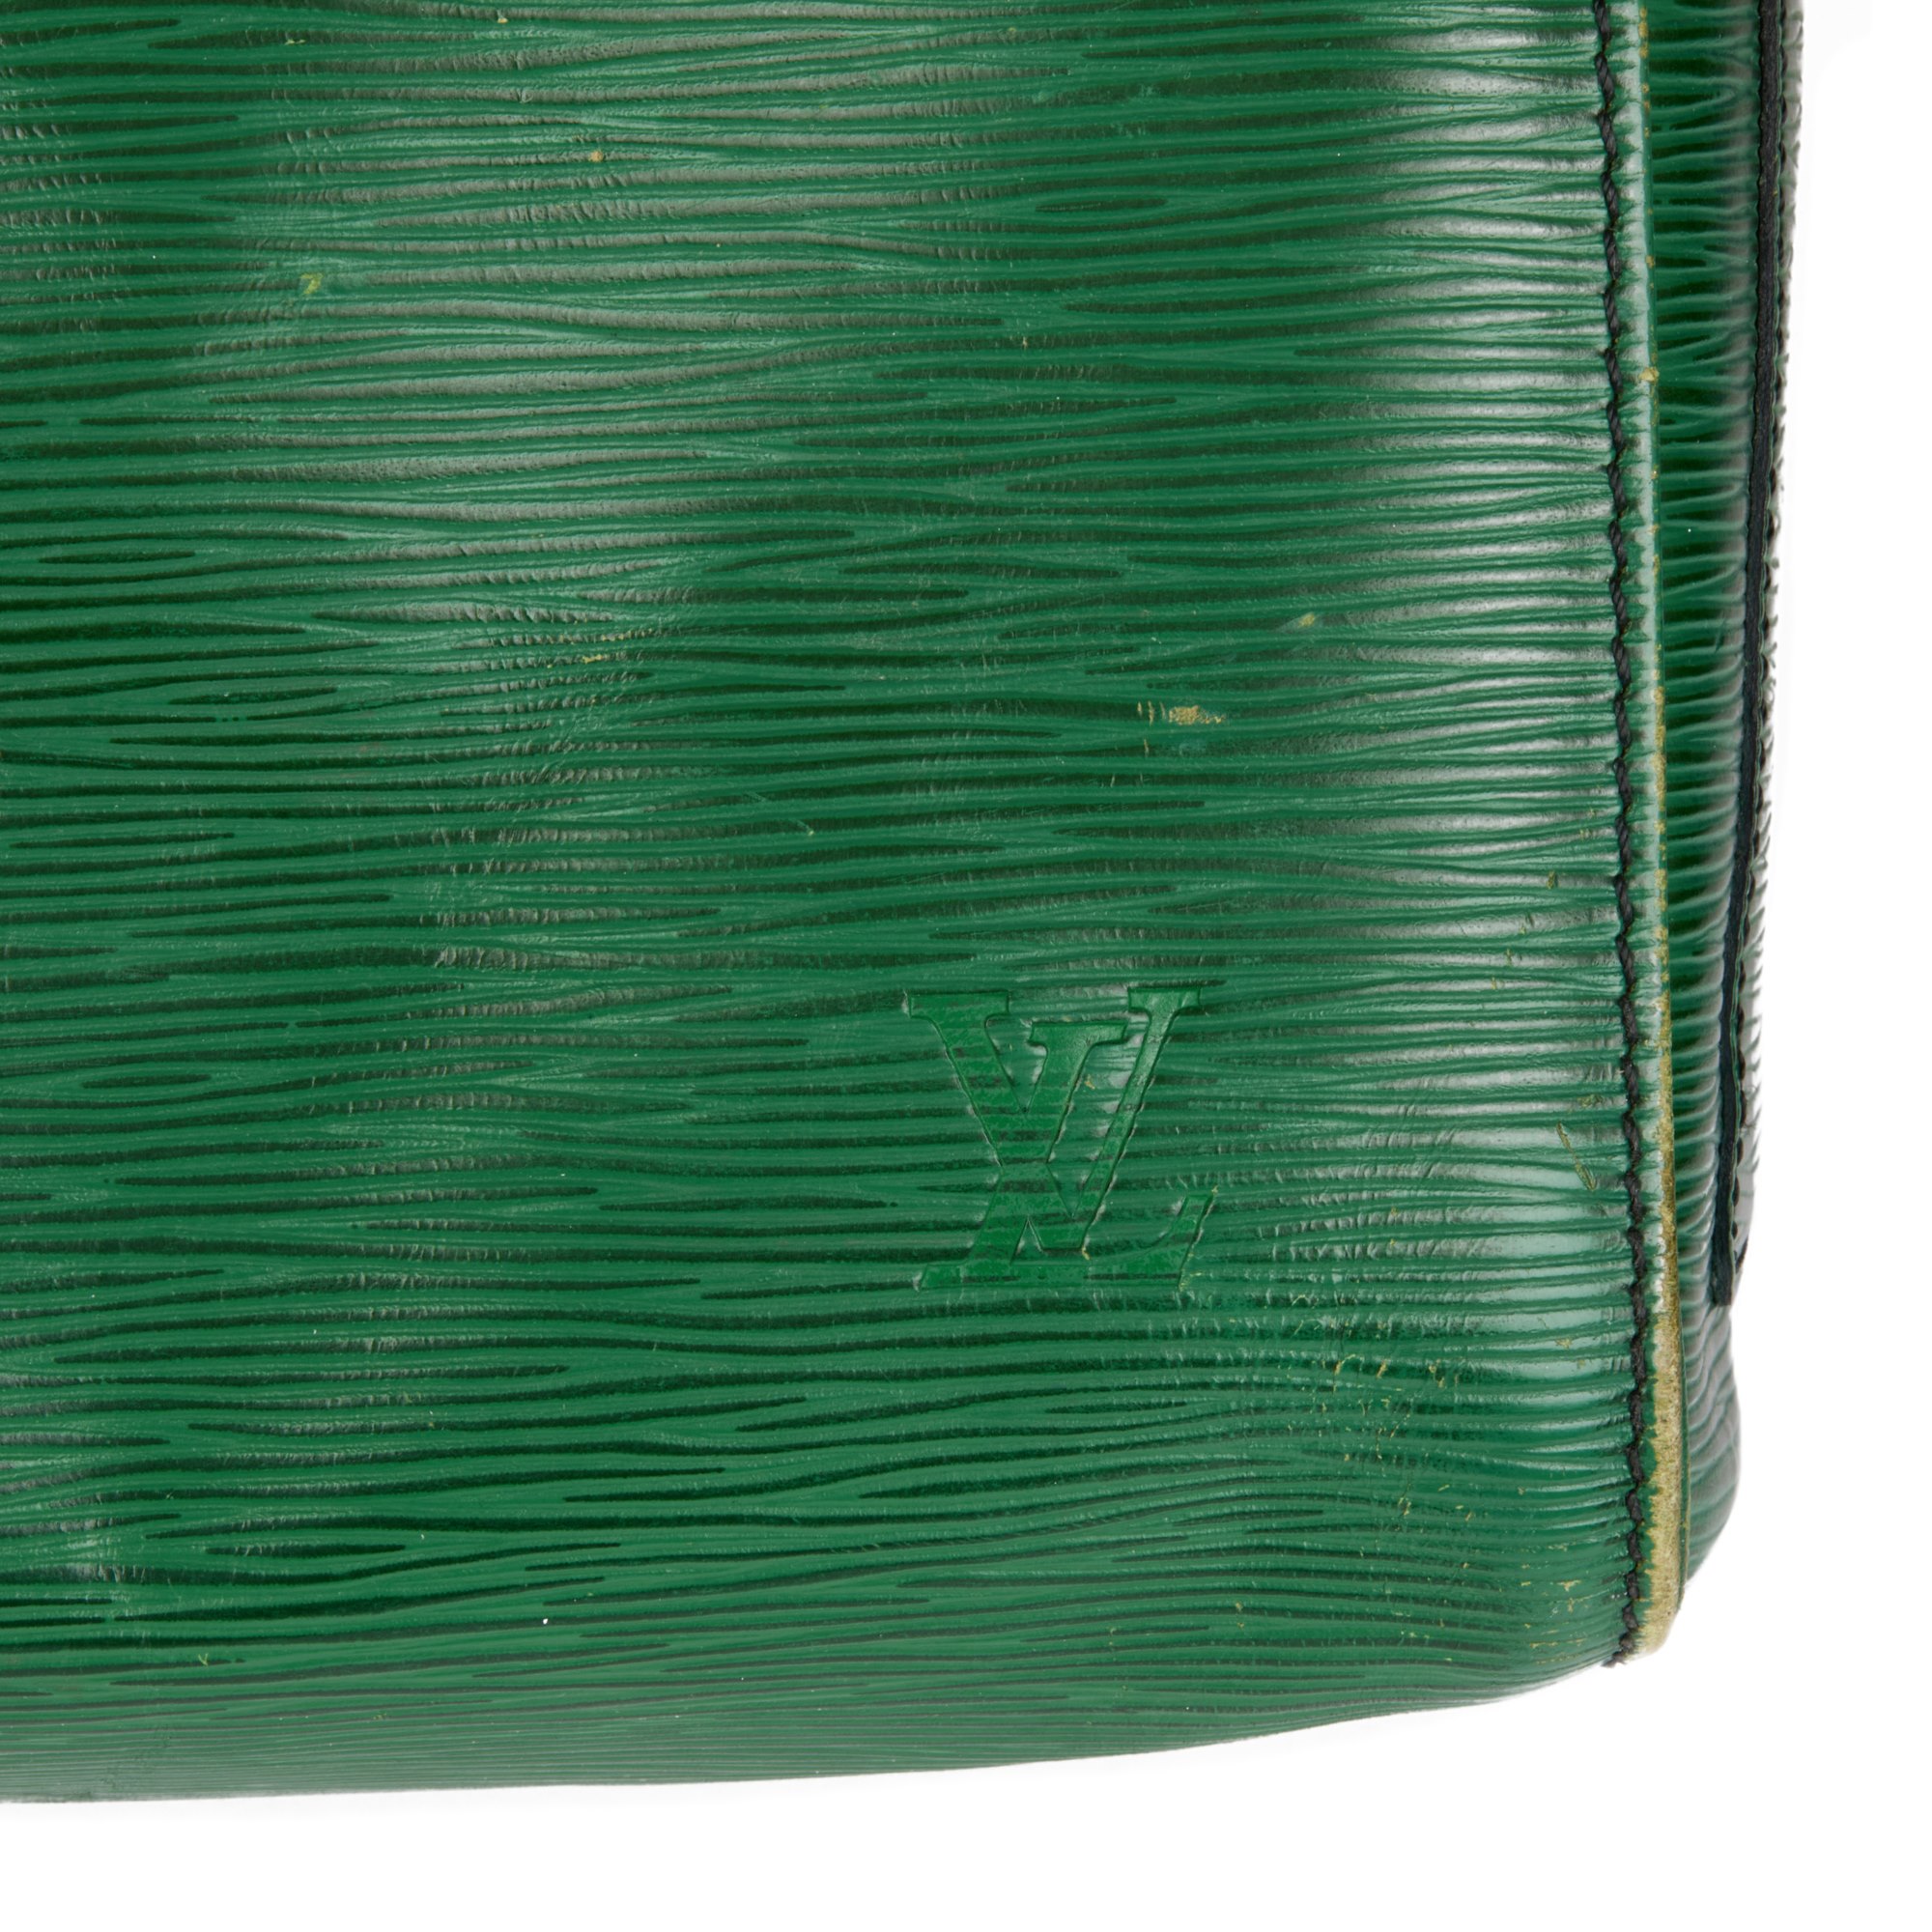 Louis Vuitton Green Epi Leather Vintage Keepall 55